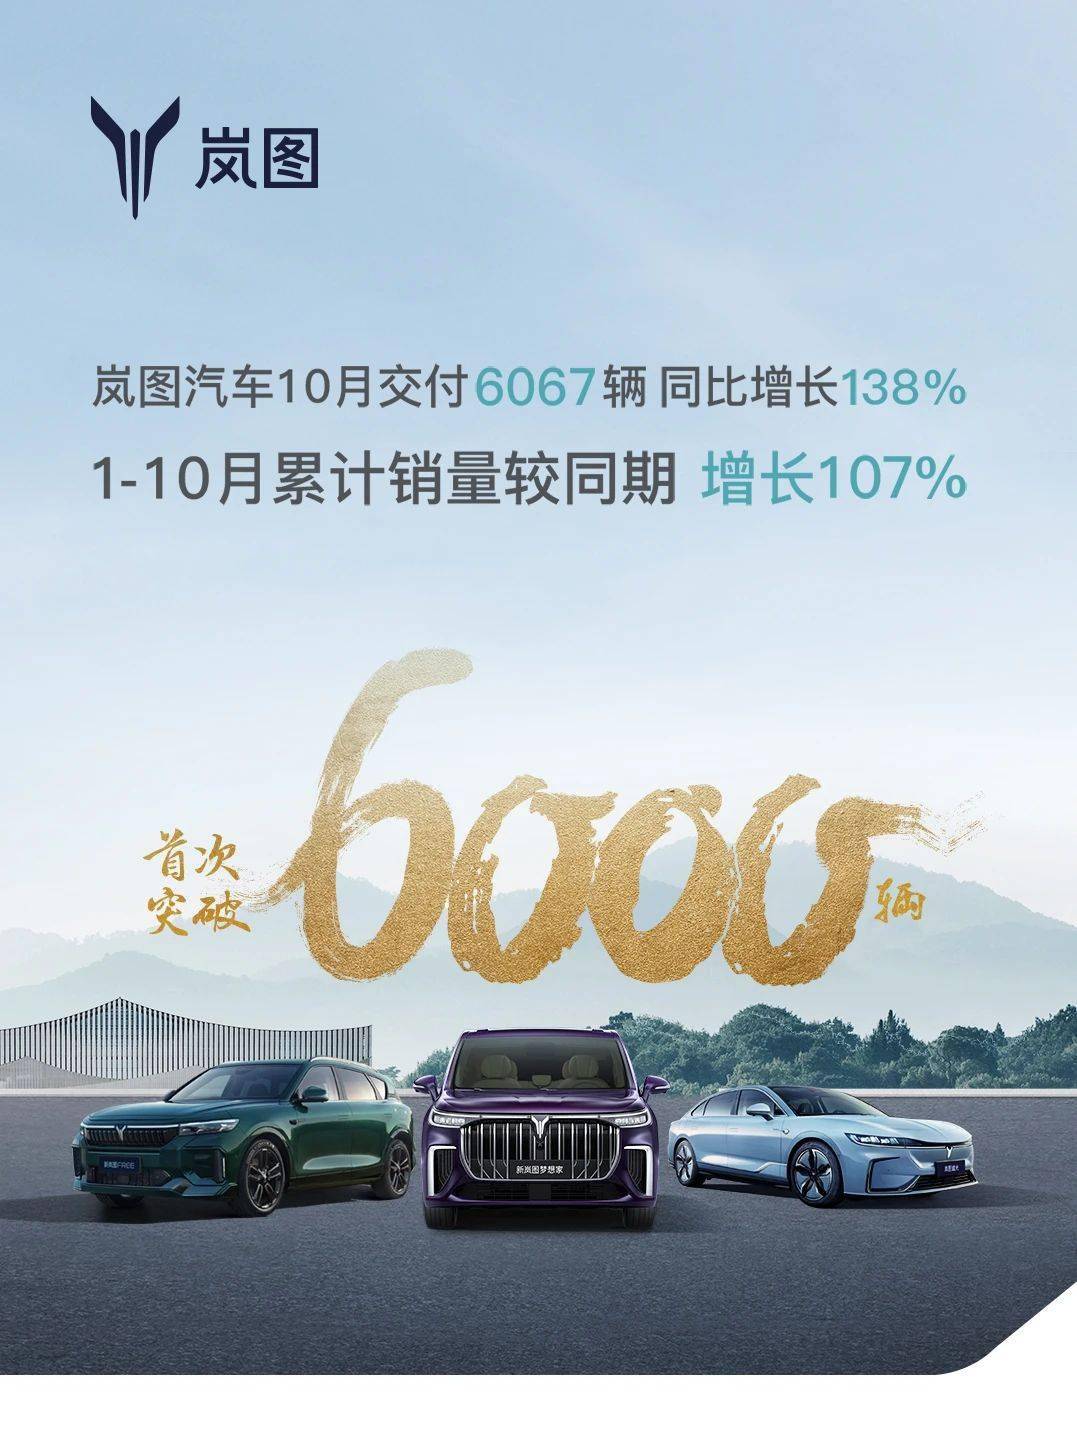 168热点-岚图汽车 10 月交付 6067 辆，同比增长 138%